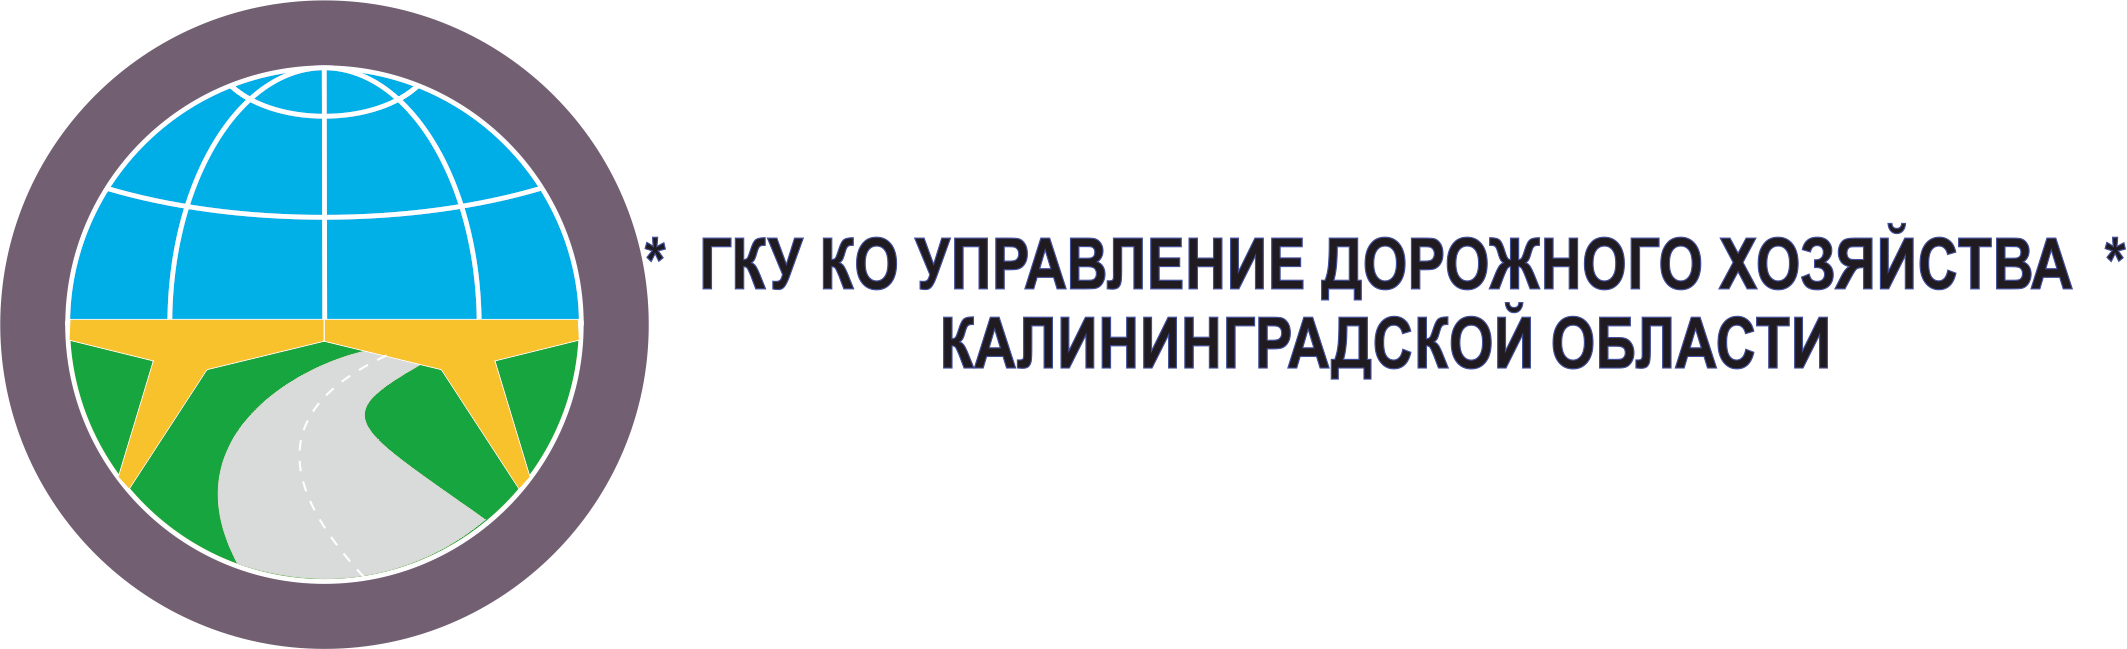 Управление дорожного хозяйства Калининградской области ДЭП39